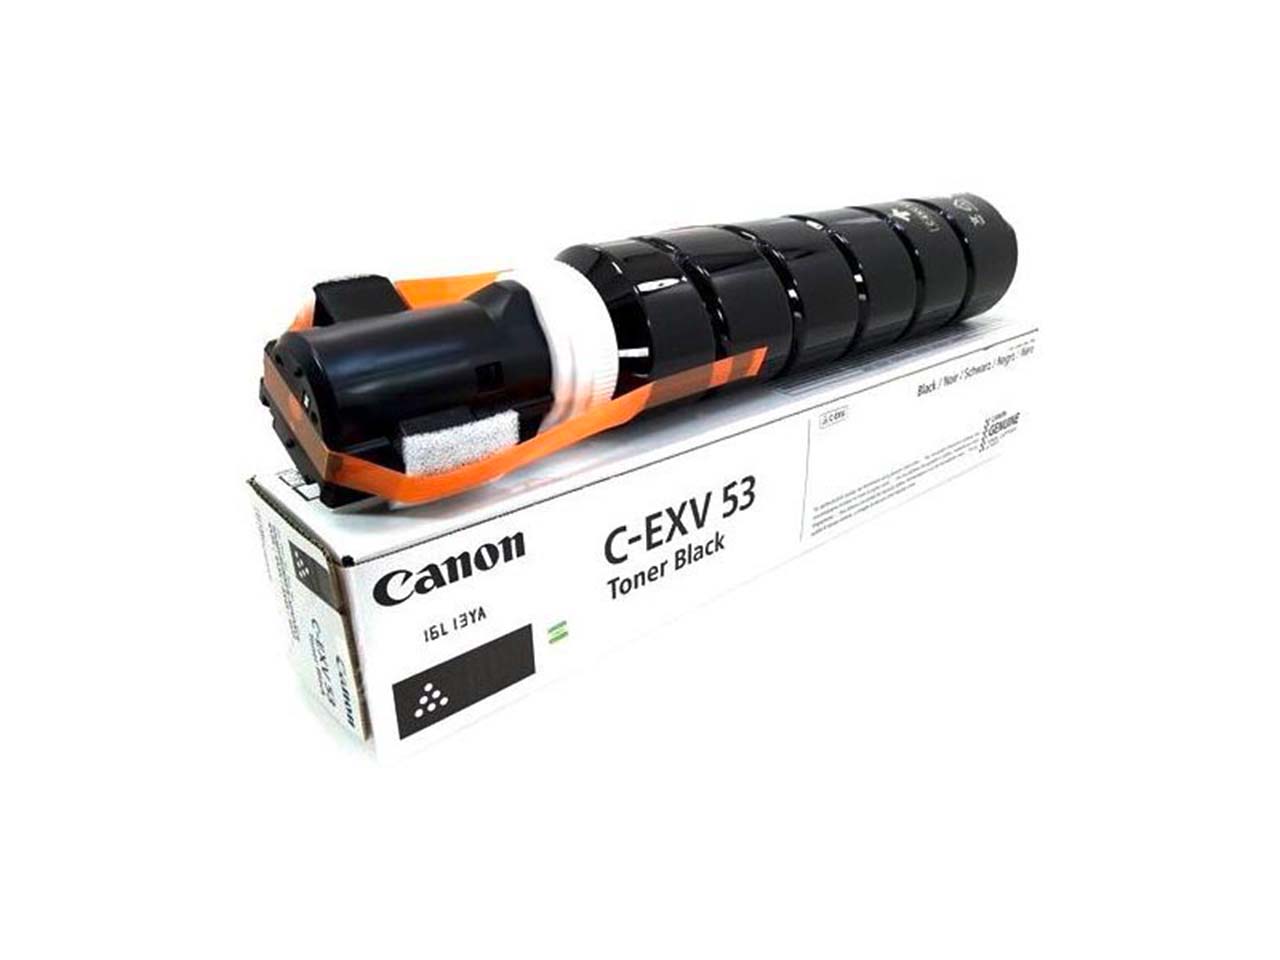 Тонер CANON C-EXV53 (0473C002) тонер canon c exv53 black 0473c002